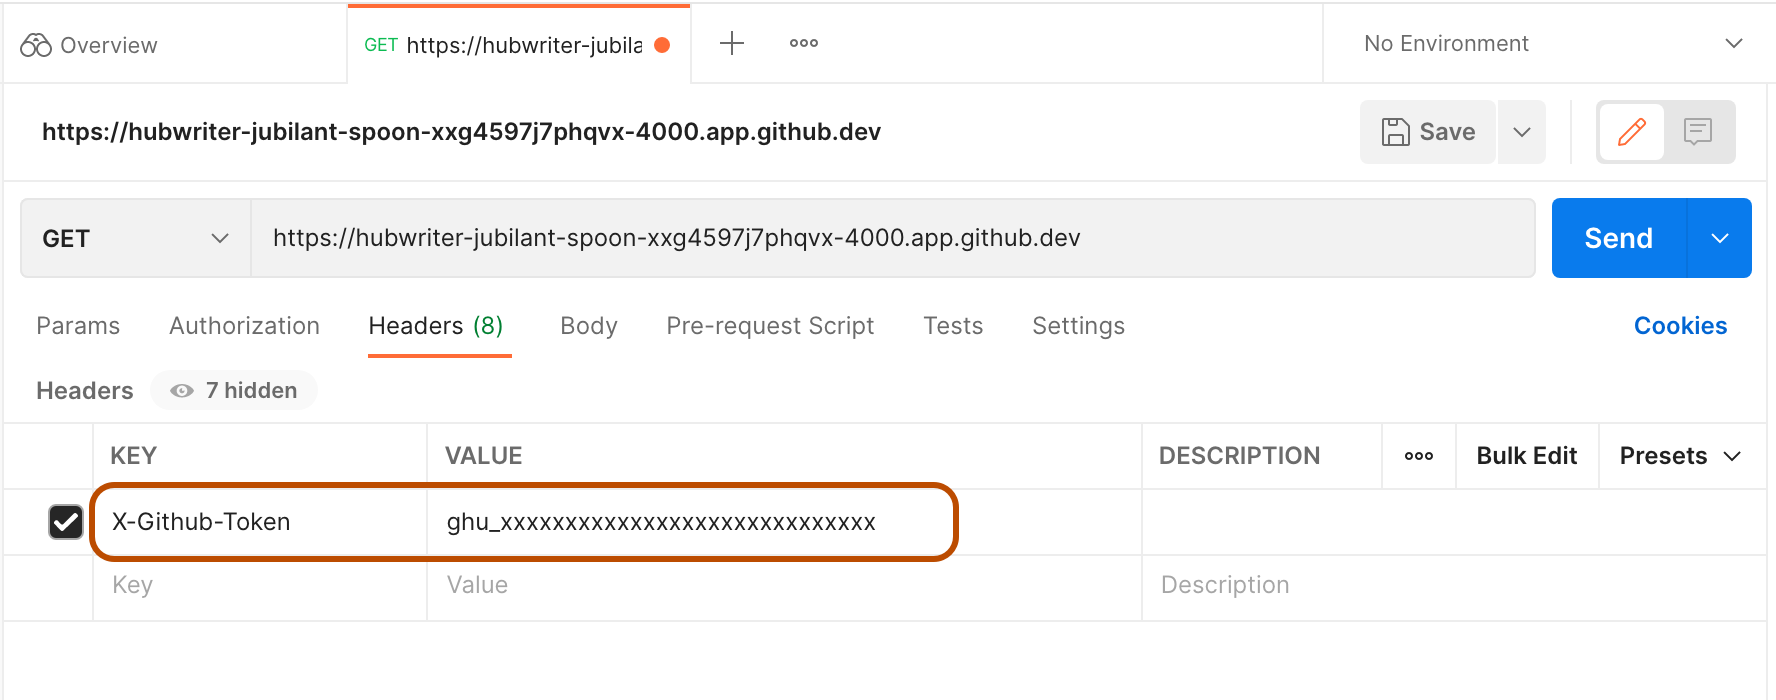 Captura de tela de um GITHUB_TOKEN fictício, colado no Postman como o valor da chave X-GitHub-Token. A chave e o valor estão realçados.